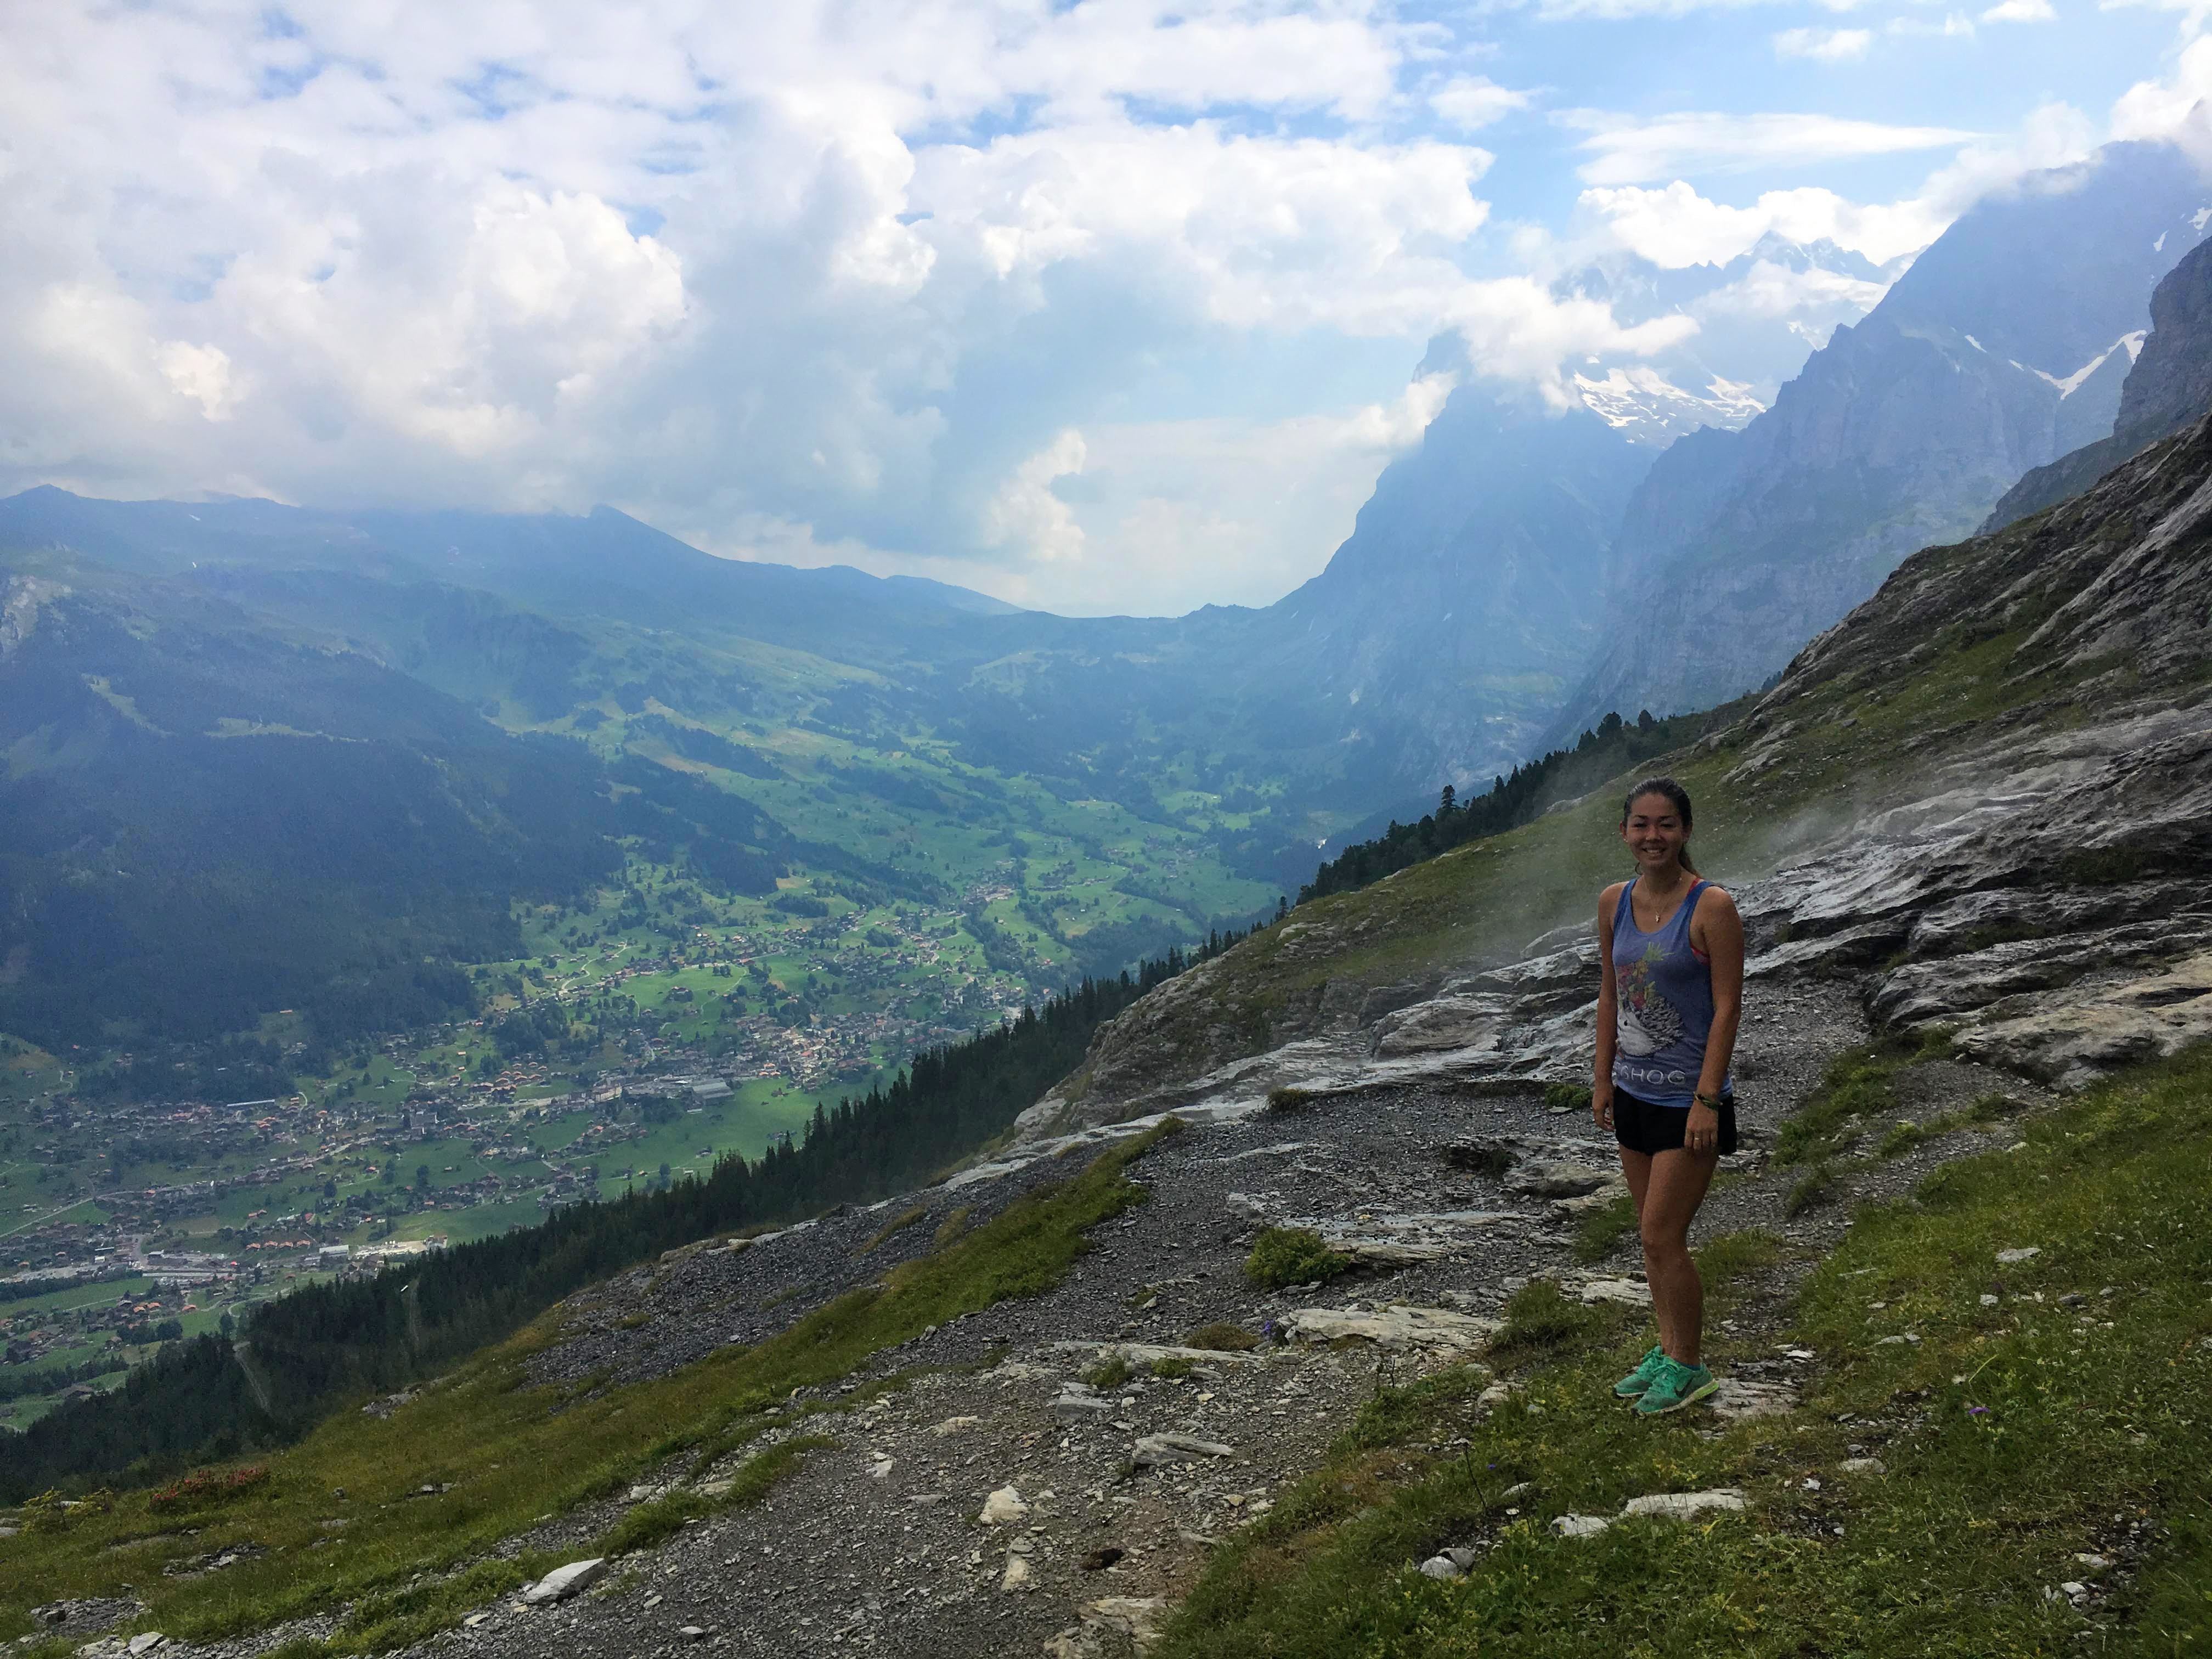 Hiking the Eiger trail in Switzerland, in the Swiss Alps. Between Kleine Scheidegg, Grindelwald, Lauterbrunnen, and Interlaken hike